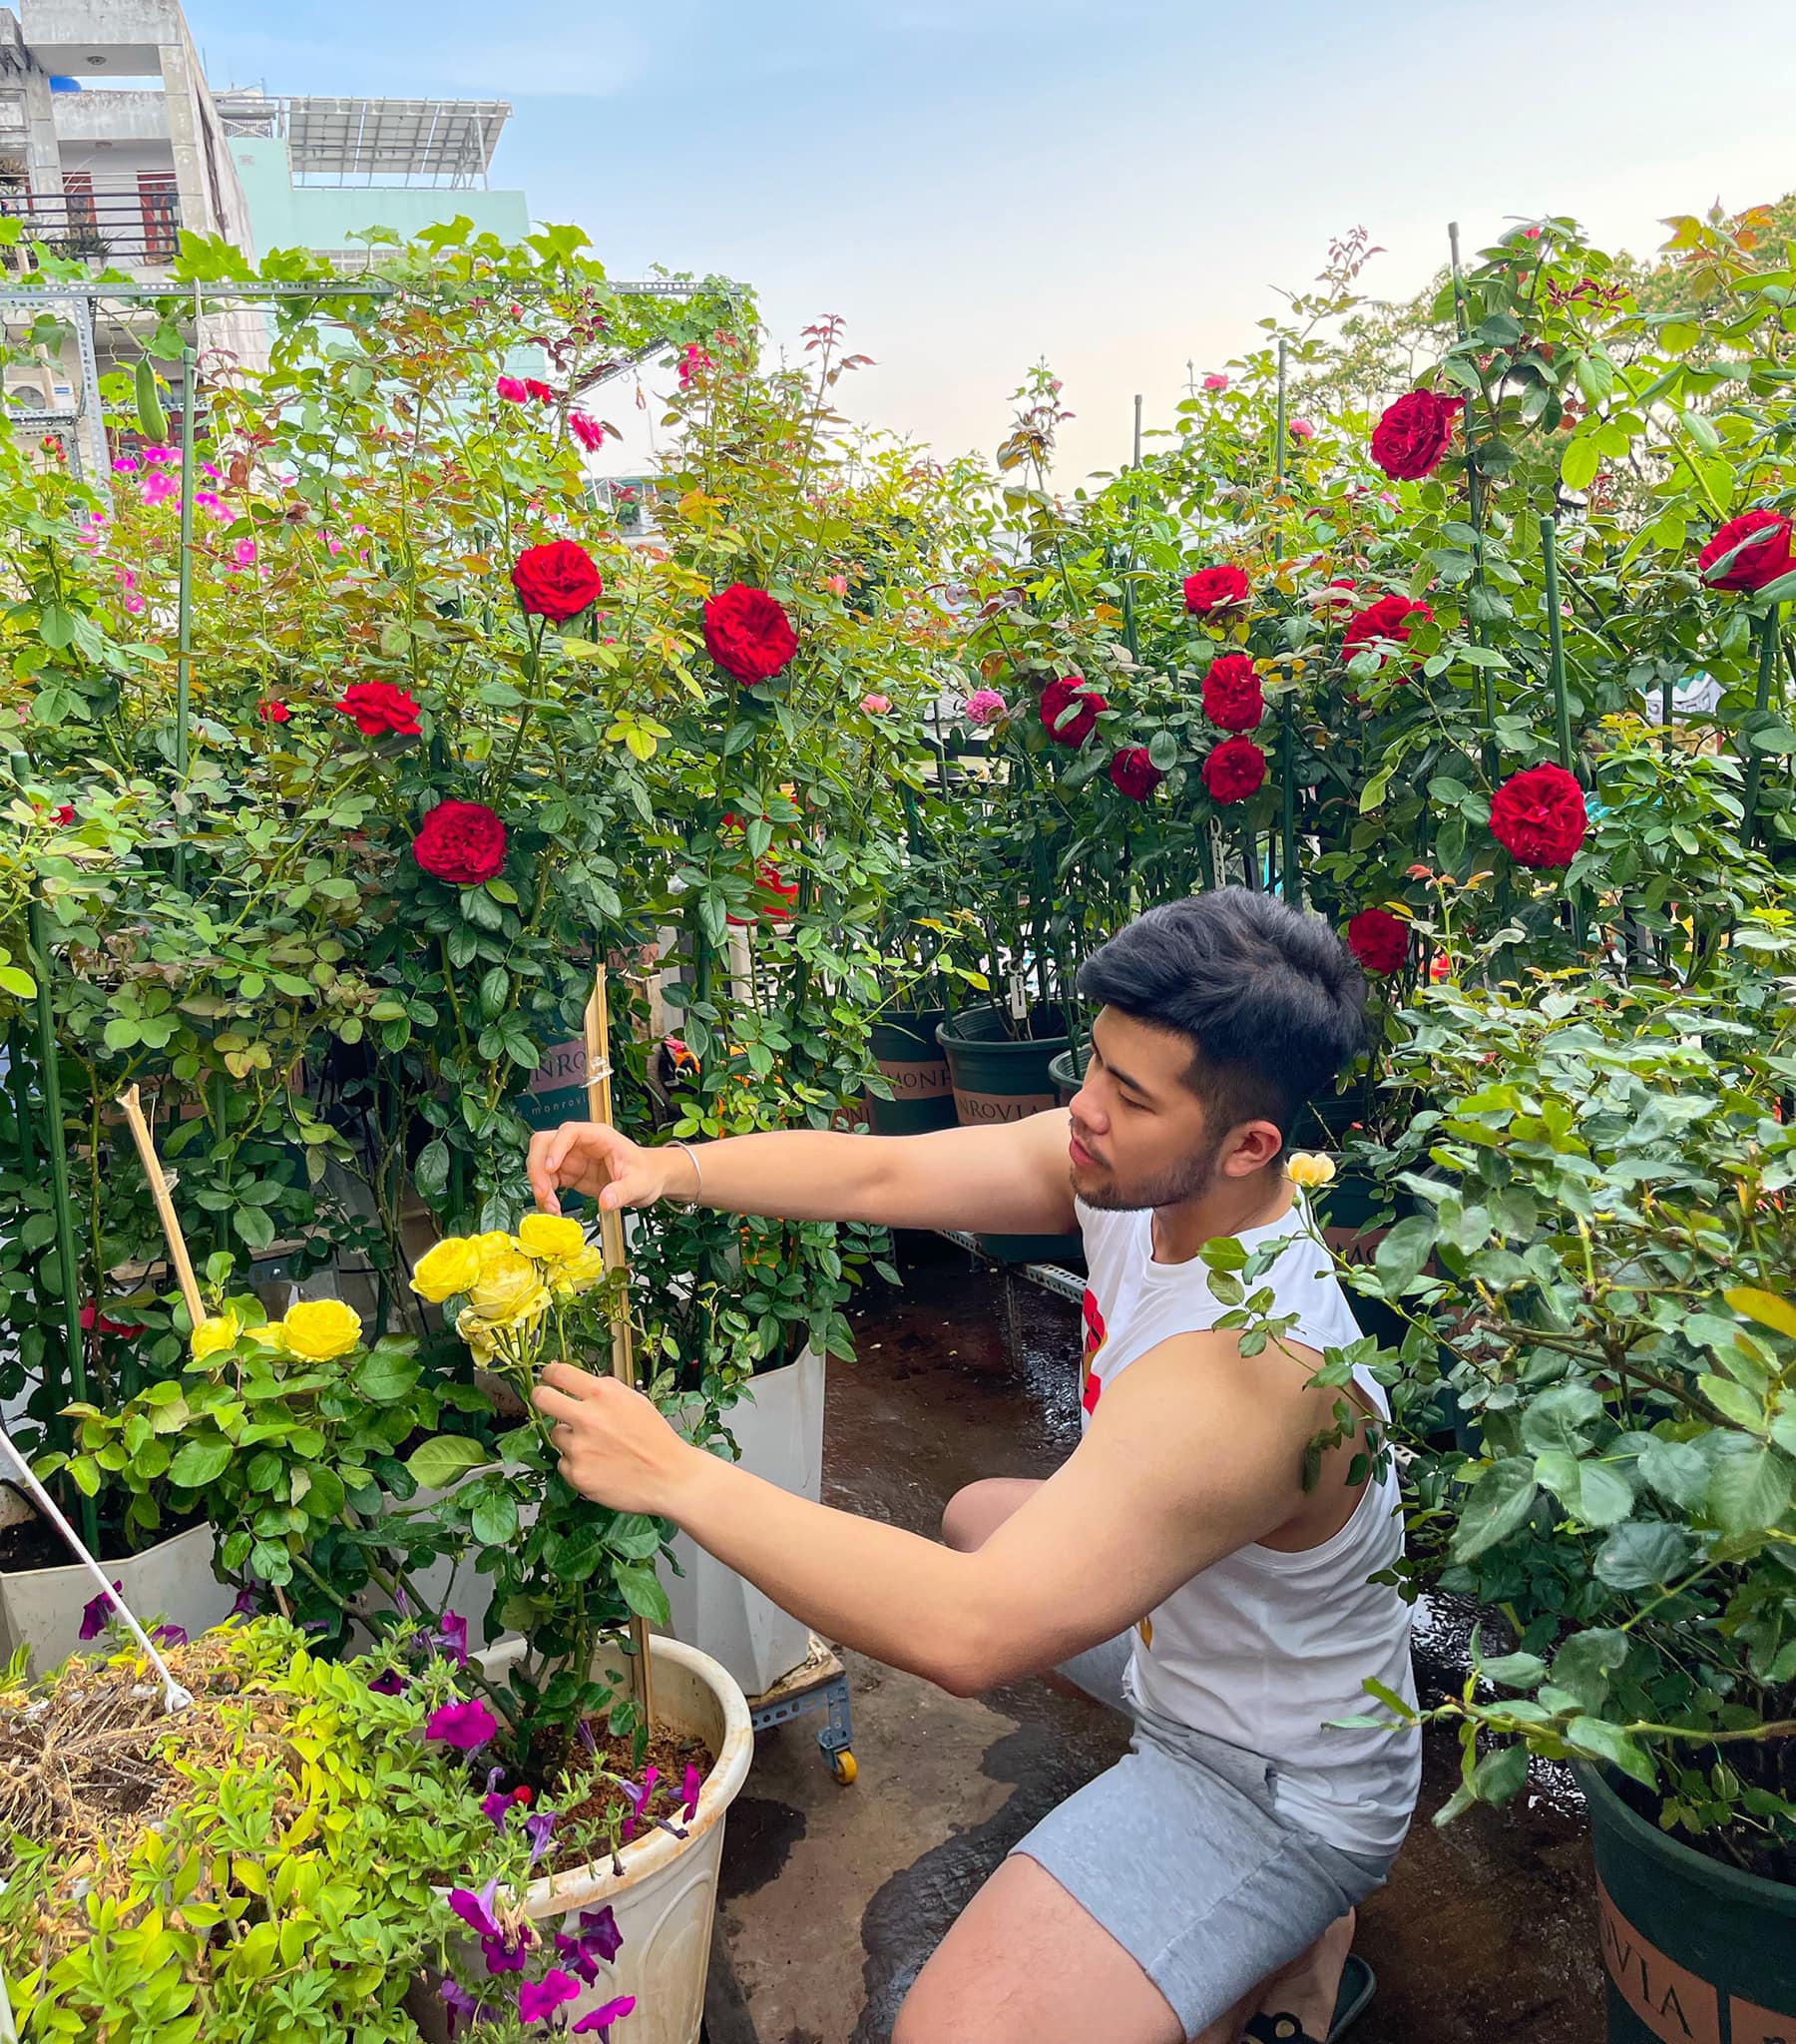 Chàng trai trẻ sở hữu vườn hồng đẹp ngất ngây trên sân thượng, càng trồng càng nghiện - Ảnh 3.